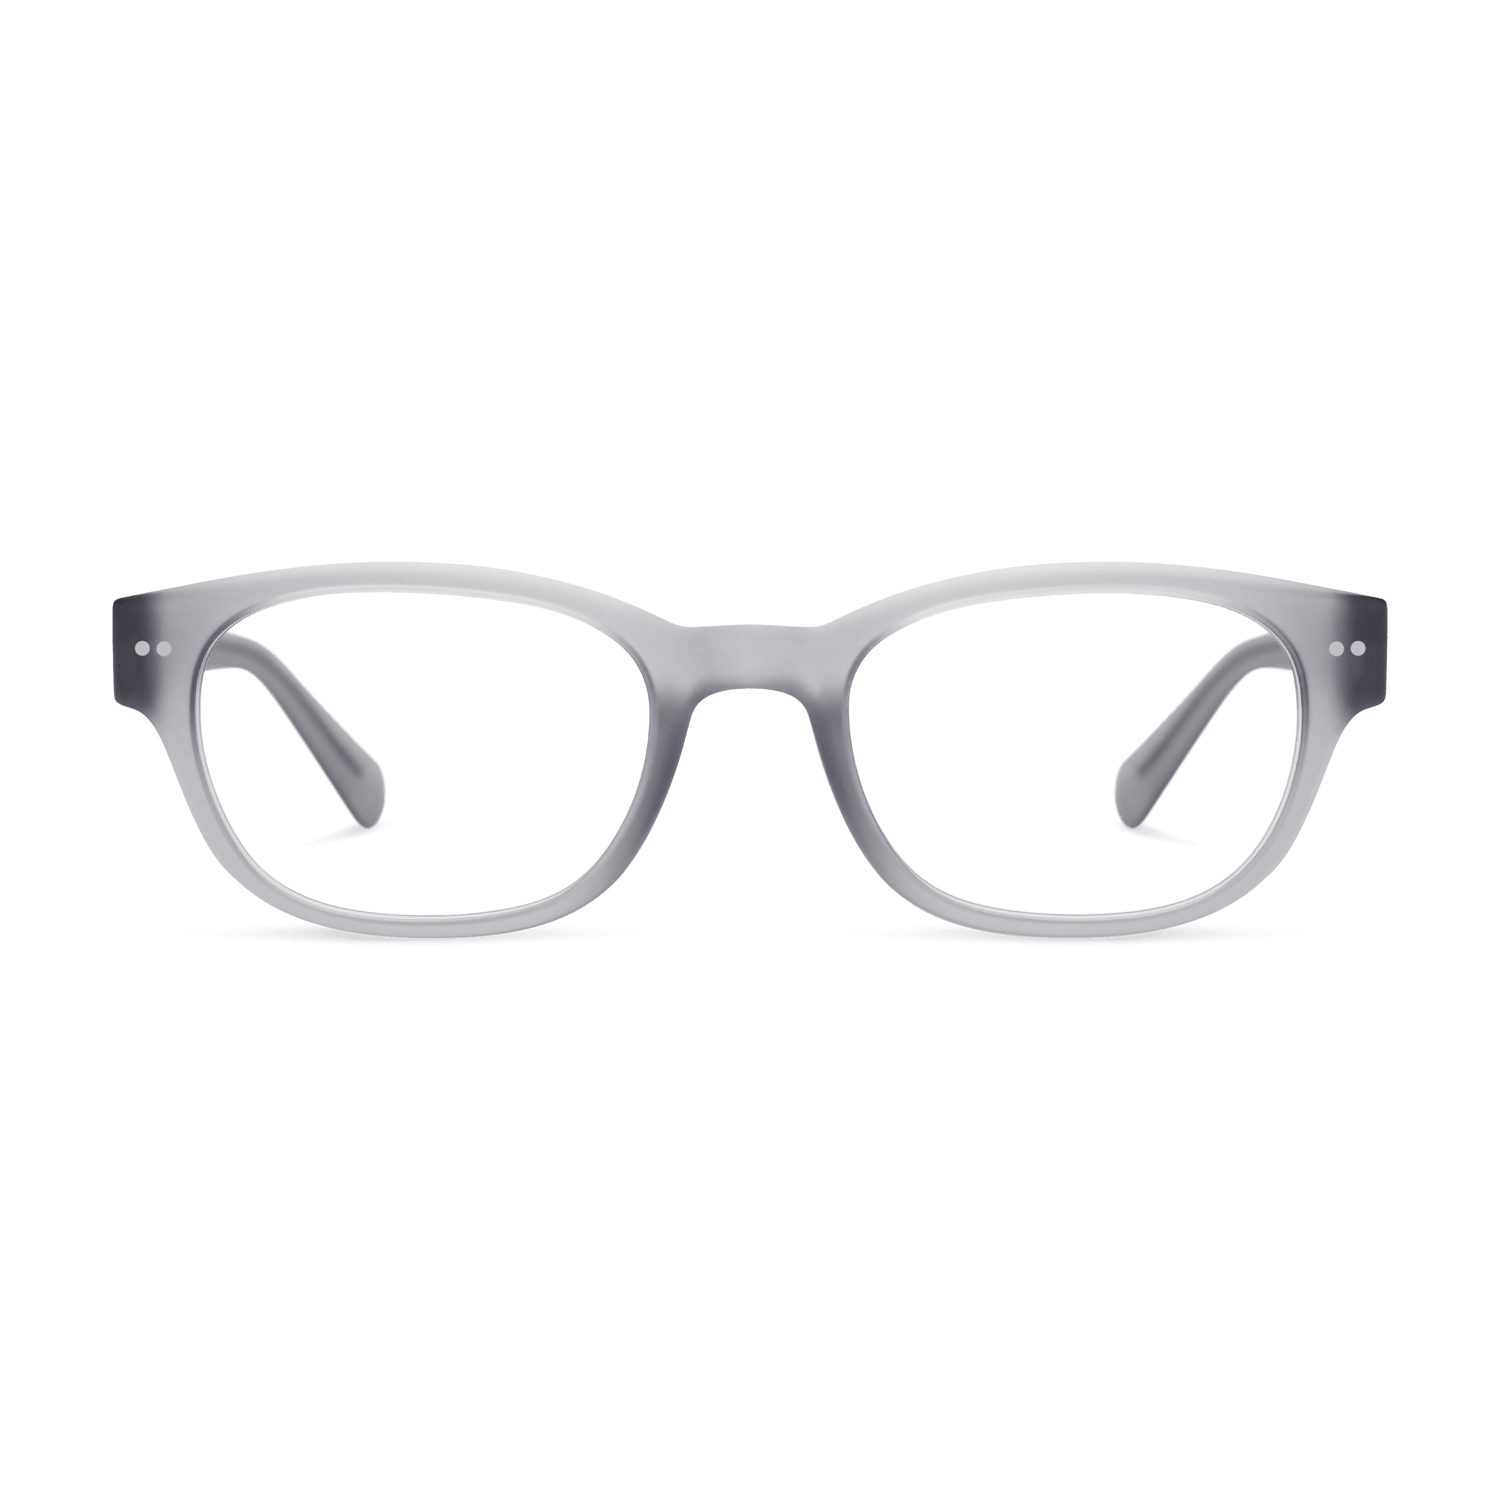 Bond Readers Eyewear LOOK OPTIC (Grey) +1.00 